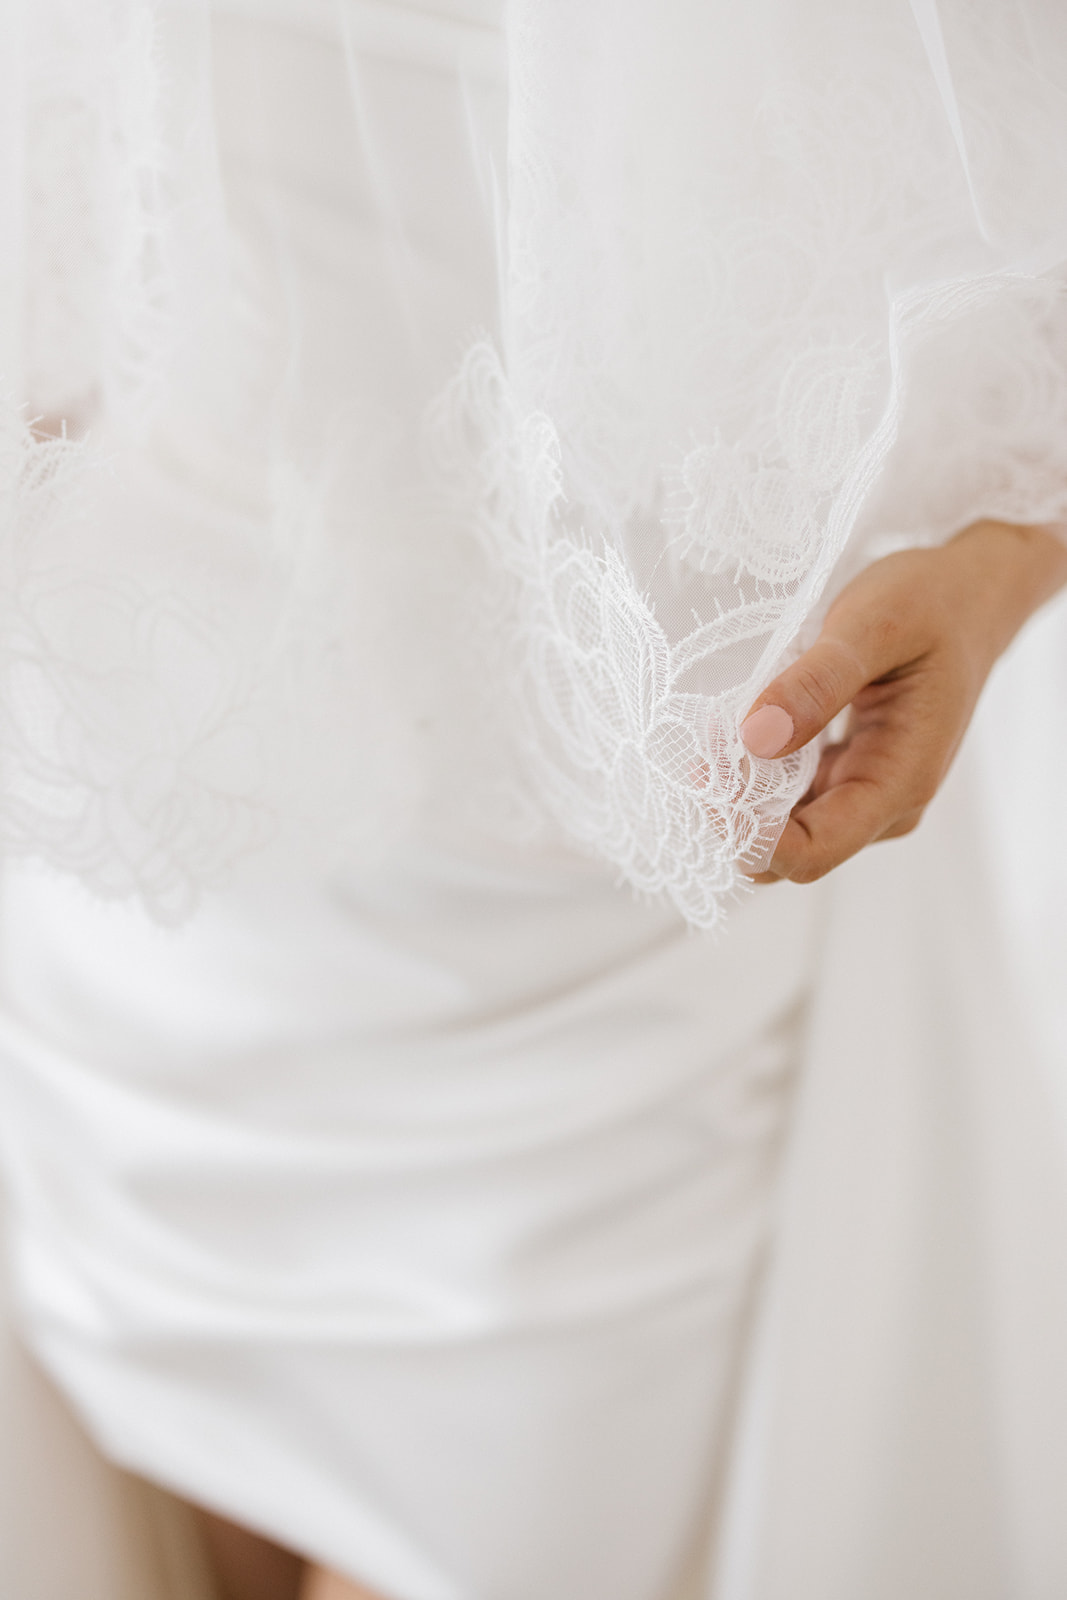 White Lace Trim, Bridal Veils Edge Lace, Wedding Garters Trim Lace